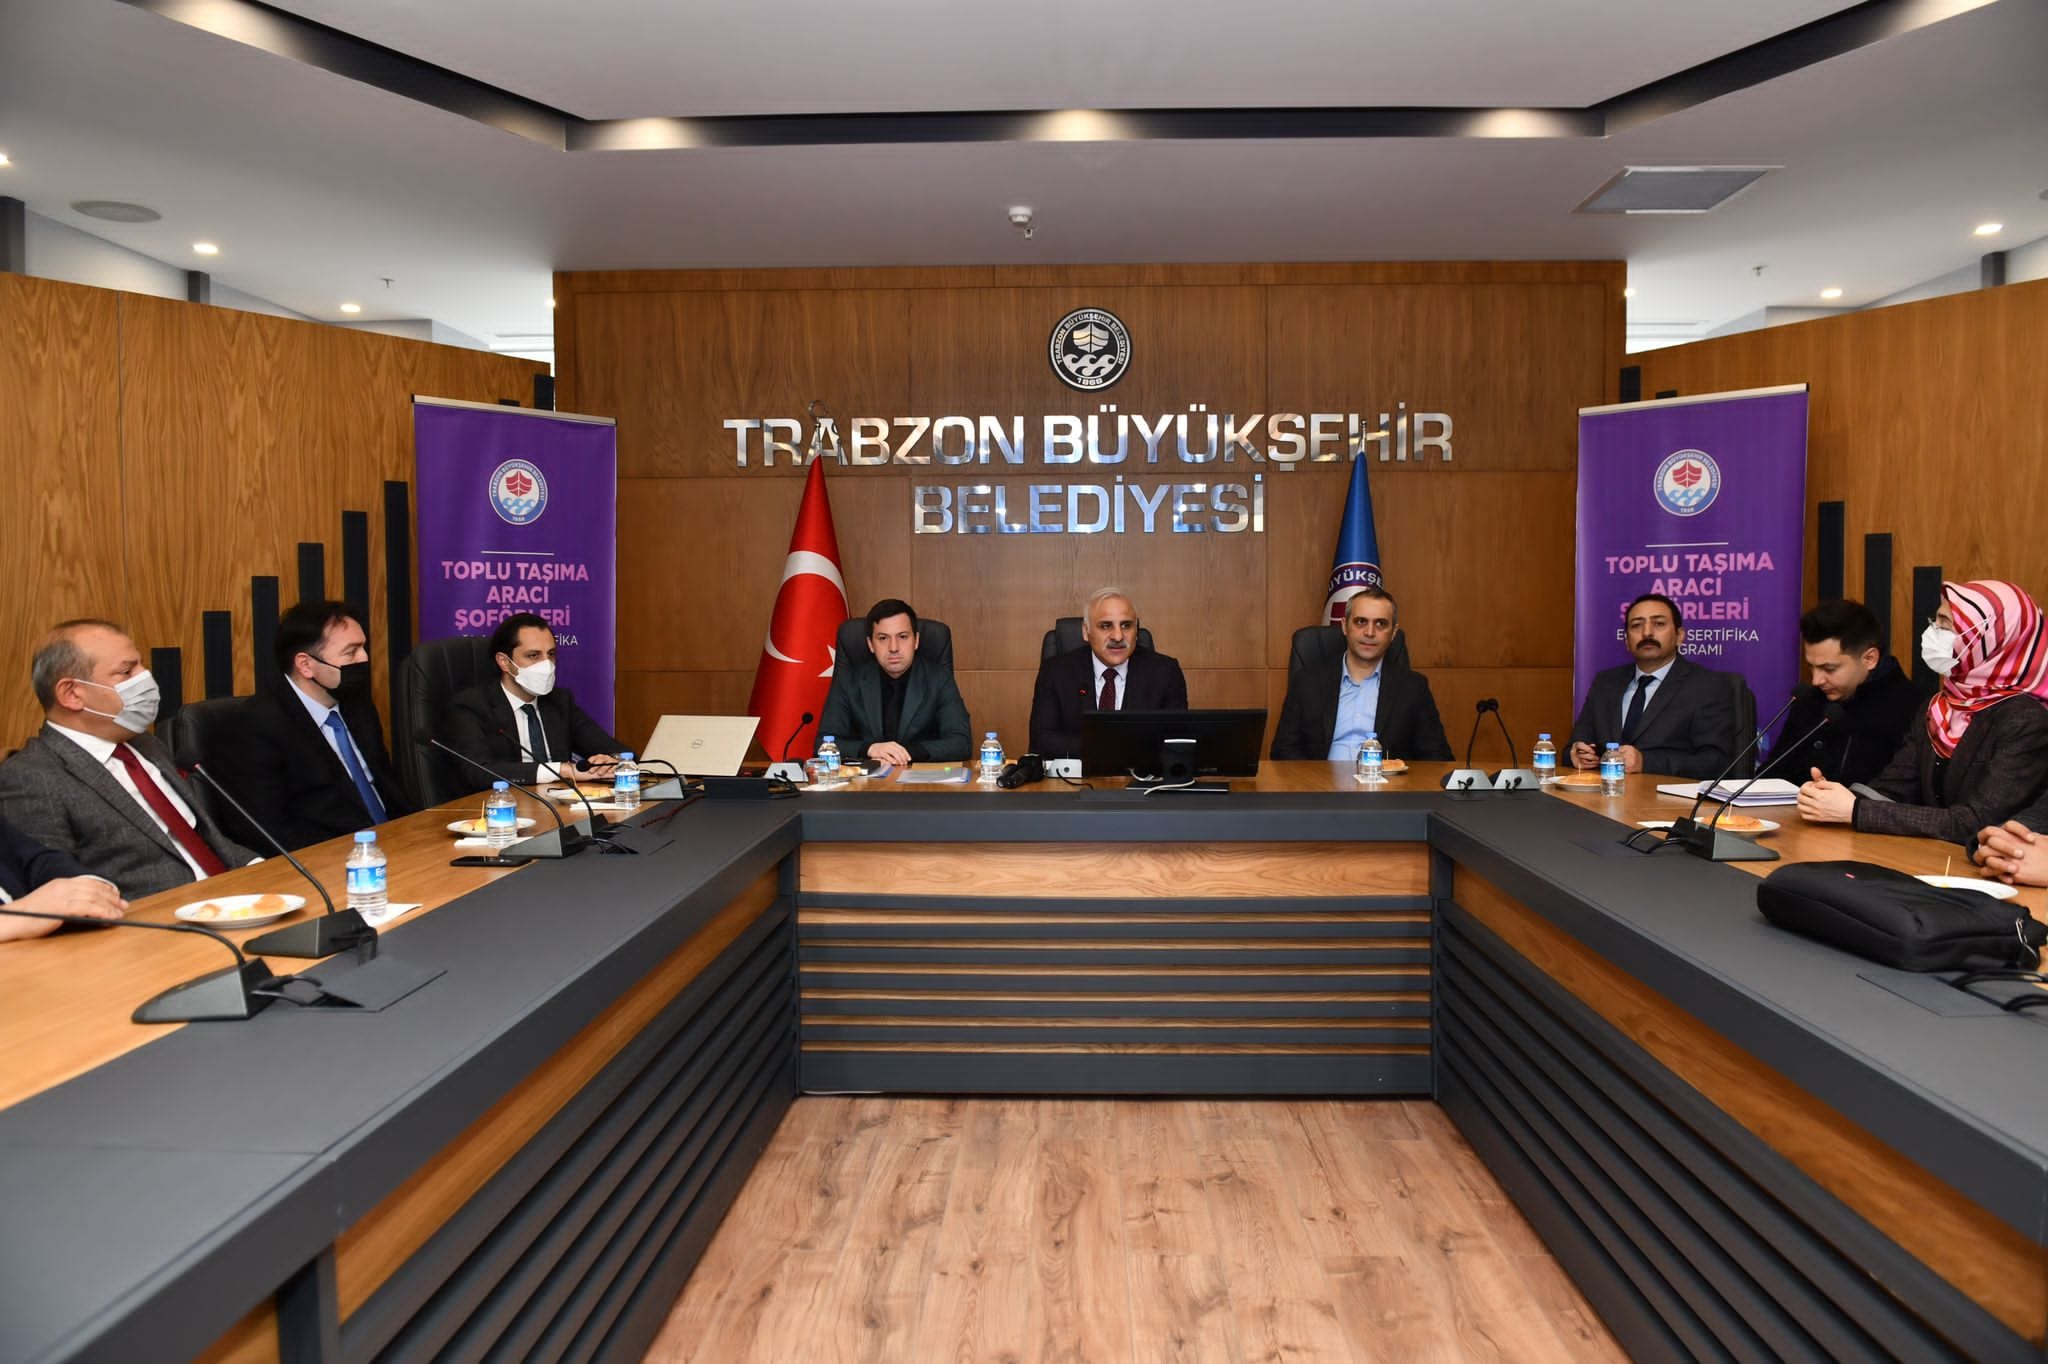 Trabzon Büyükşehir Belediyesi şoförlere eğitim verilecek